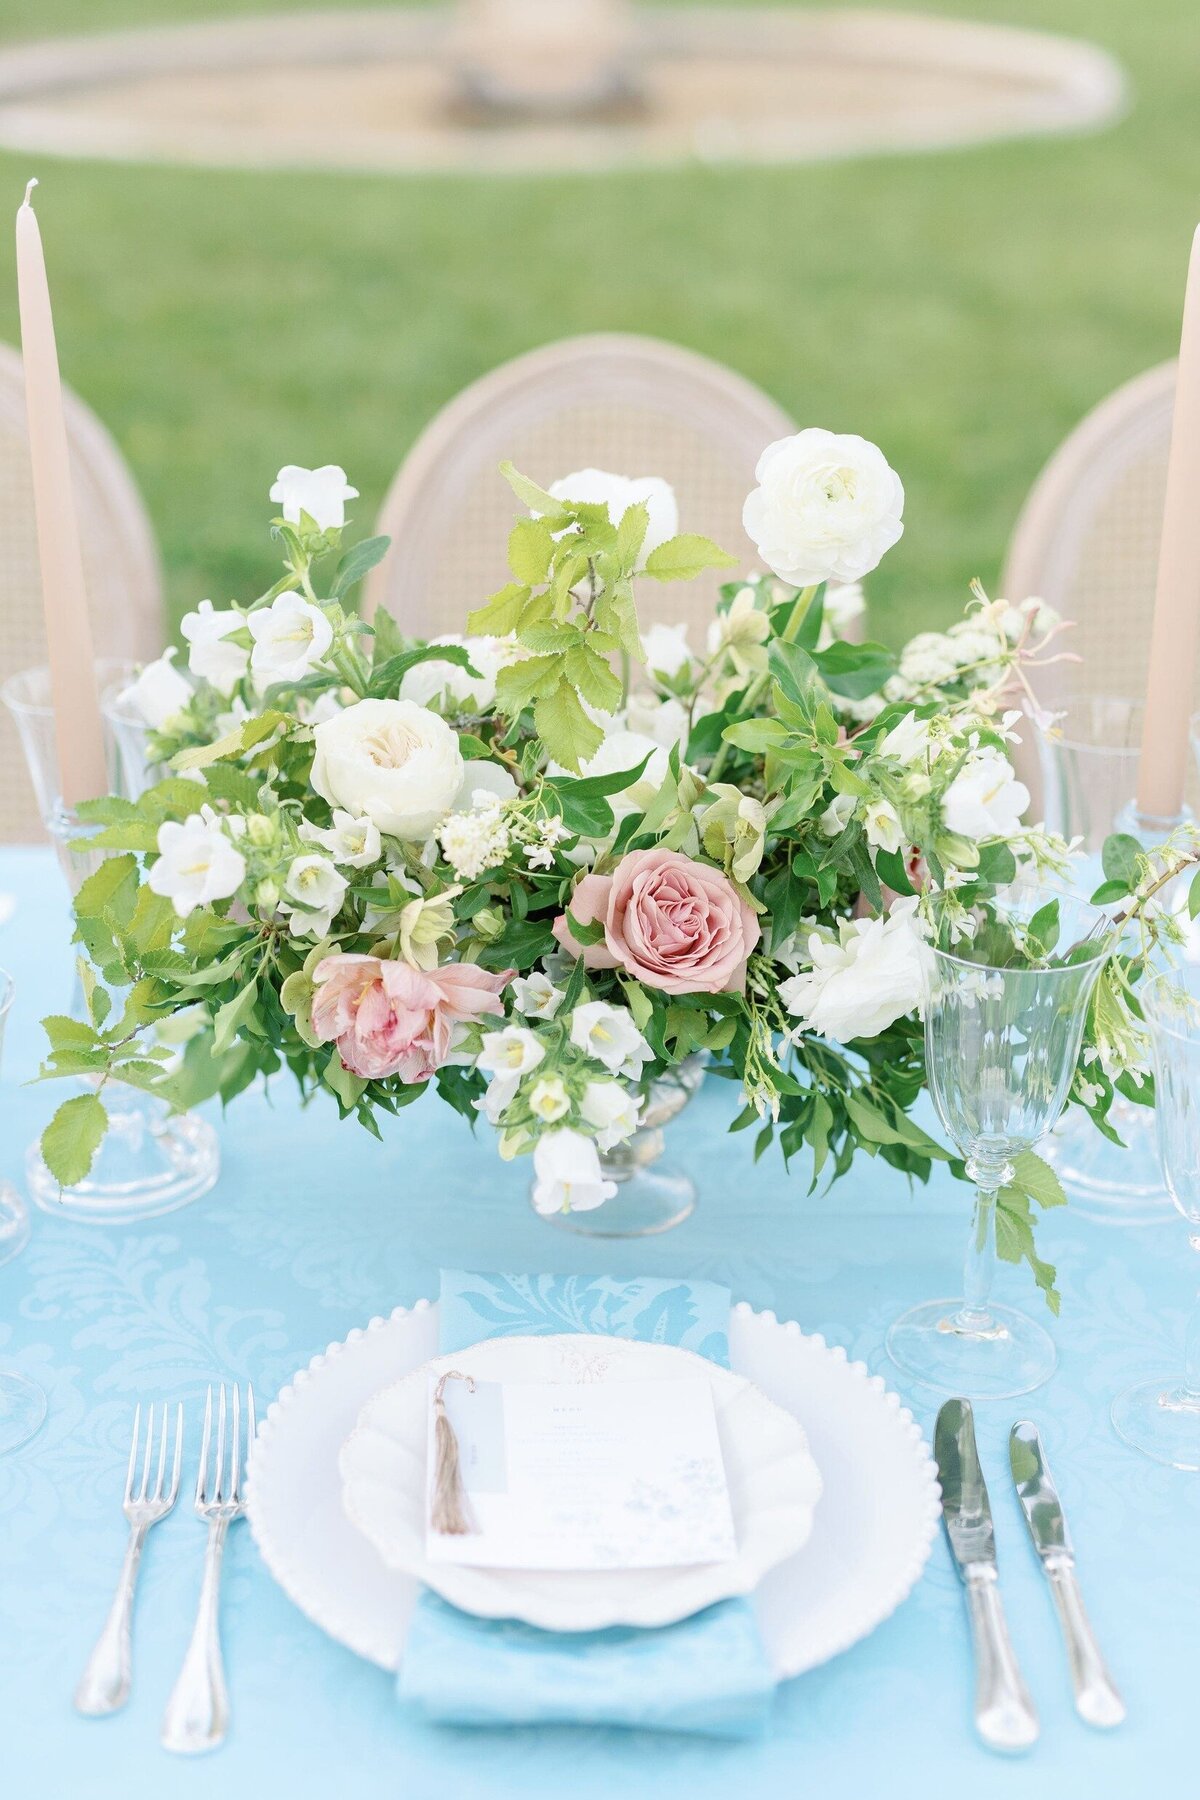 Décoration-florale-table-mariage-sur-mesure